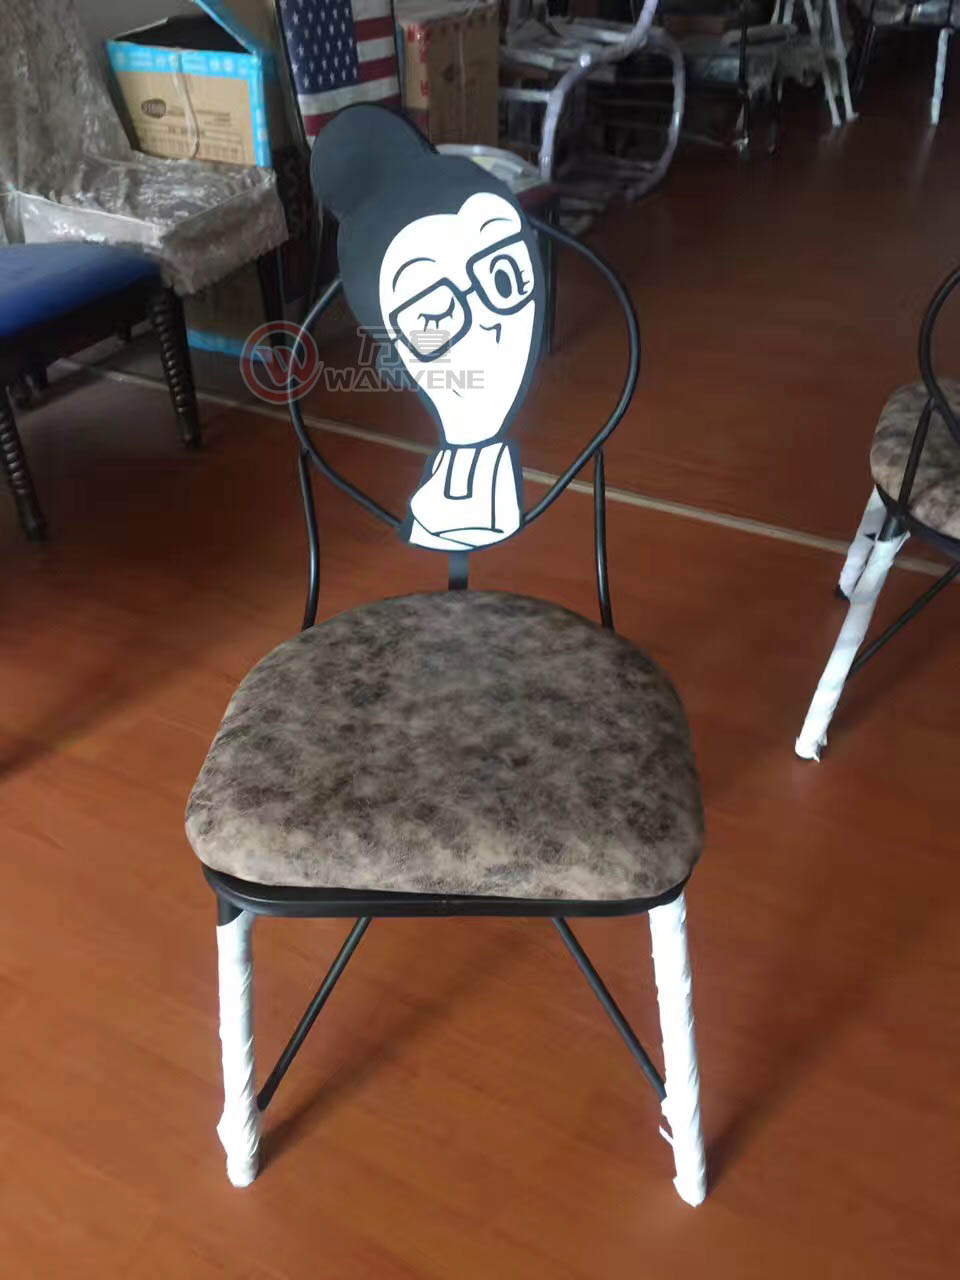 姑奶奶铁艺餐椅 便宜奶茶店餐椅 奶茶店用椅子